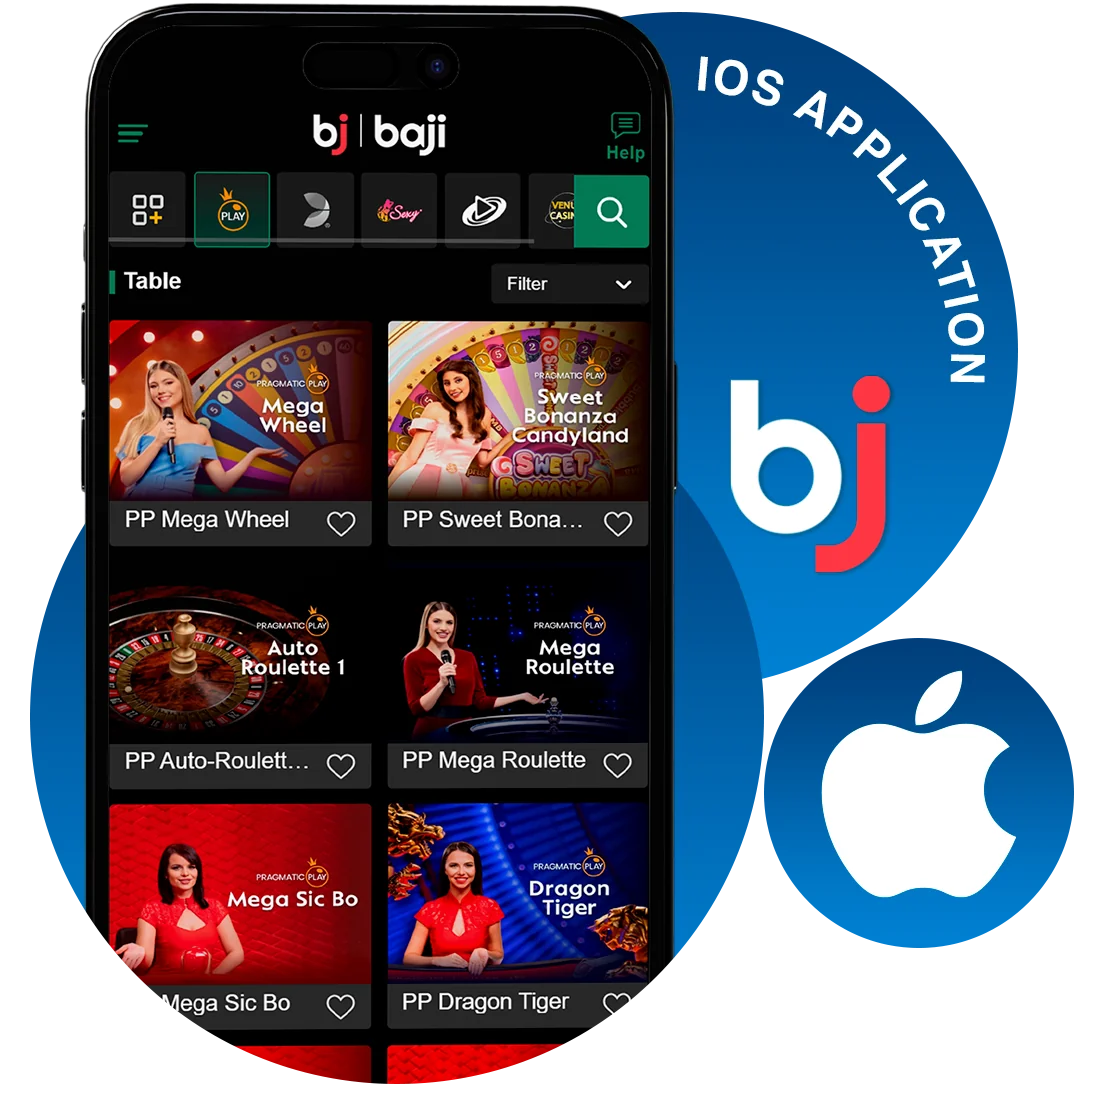 iOS-এ Baji ইনস্টল করা সহজ - ধাপে ধাপে নির্দেশ